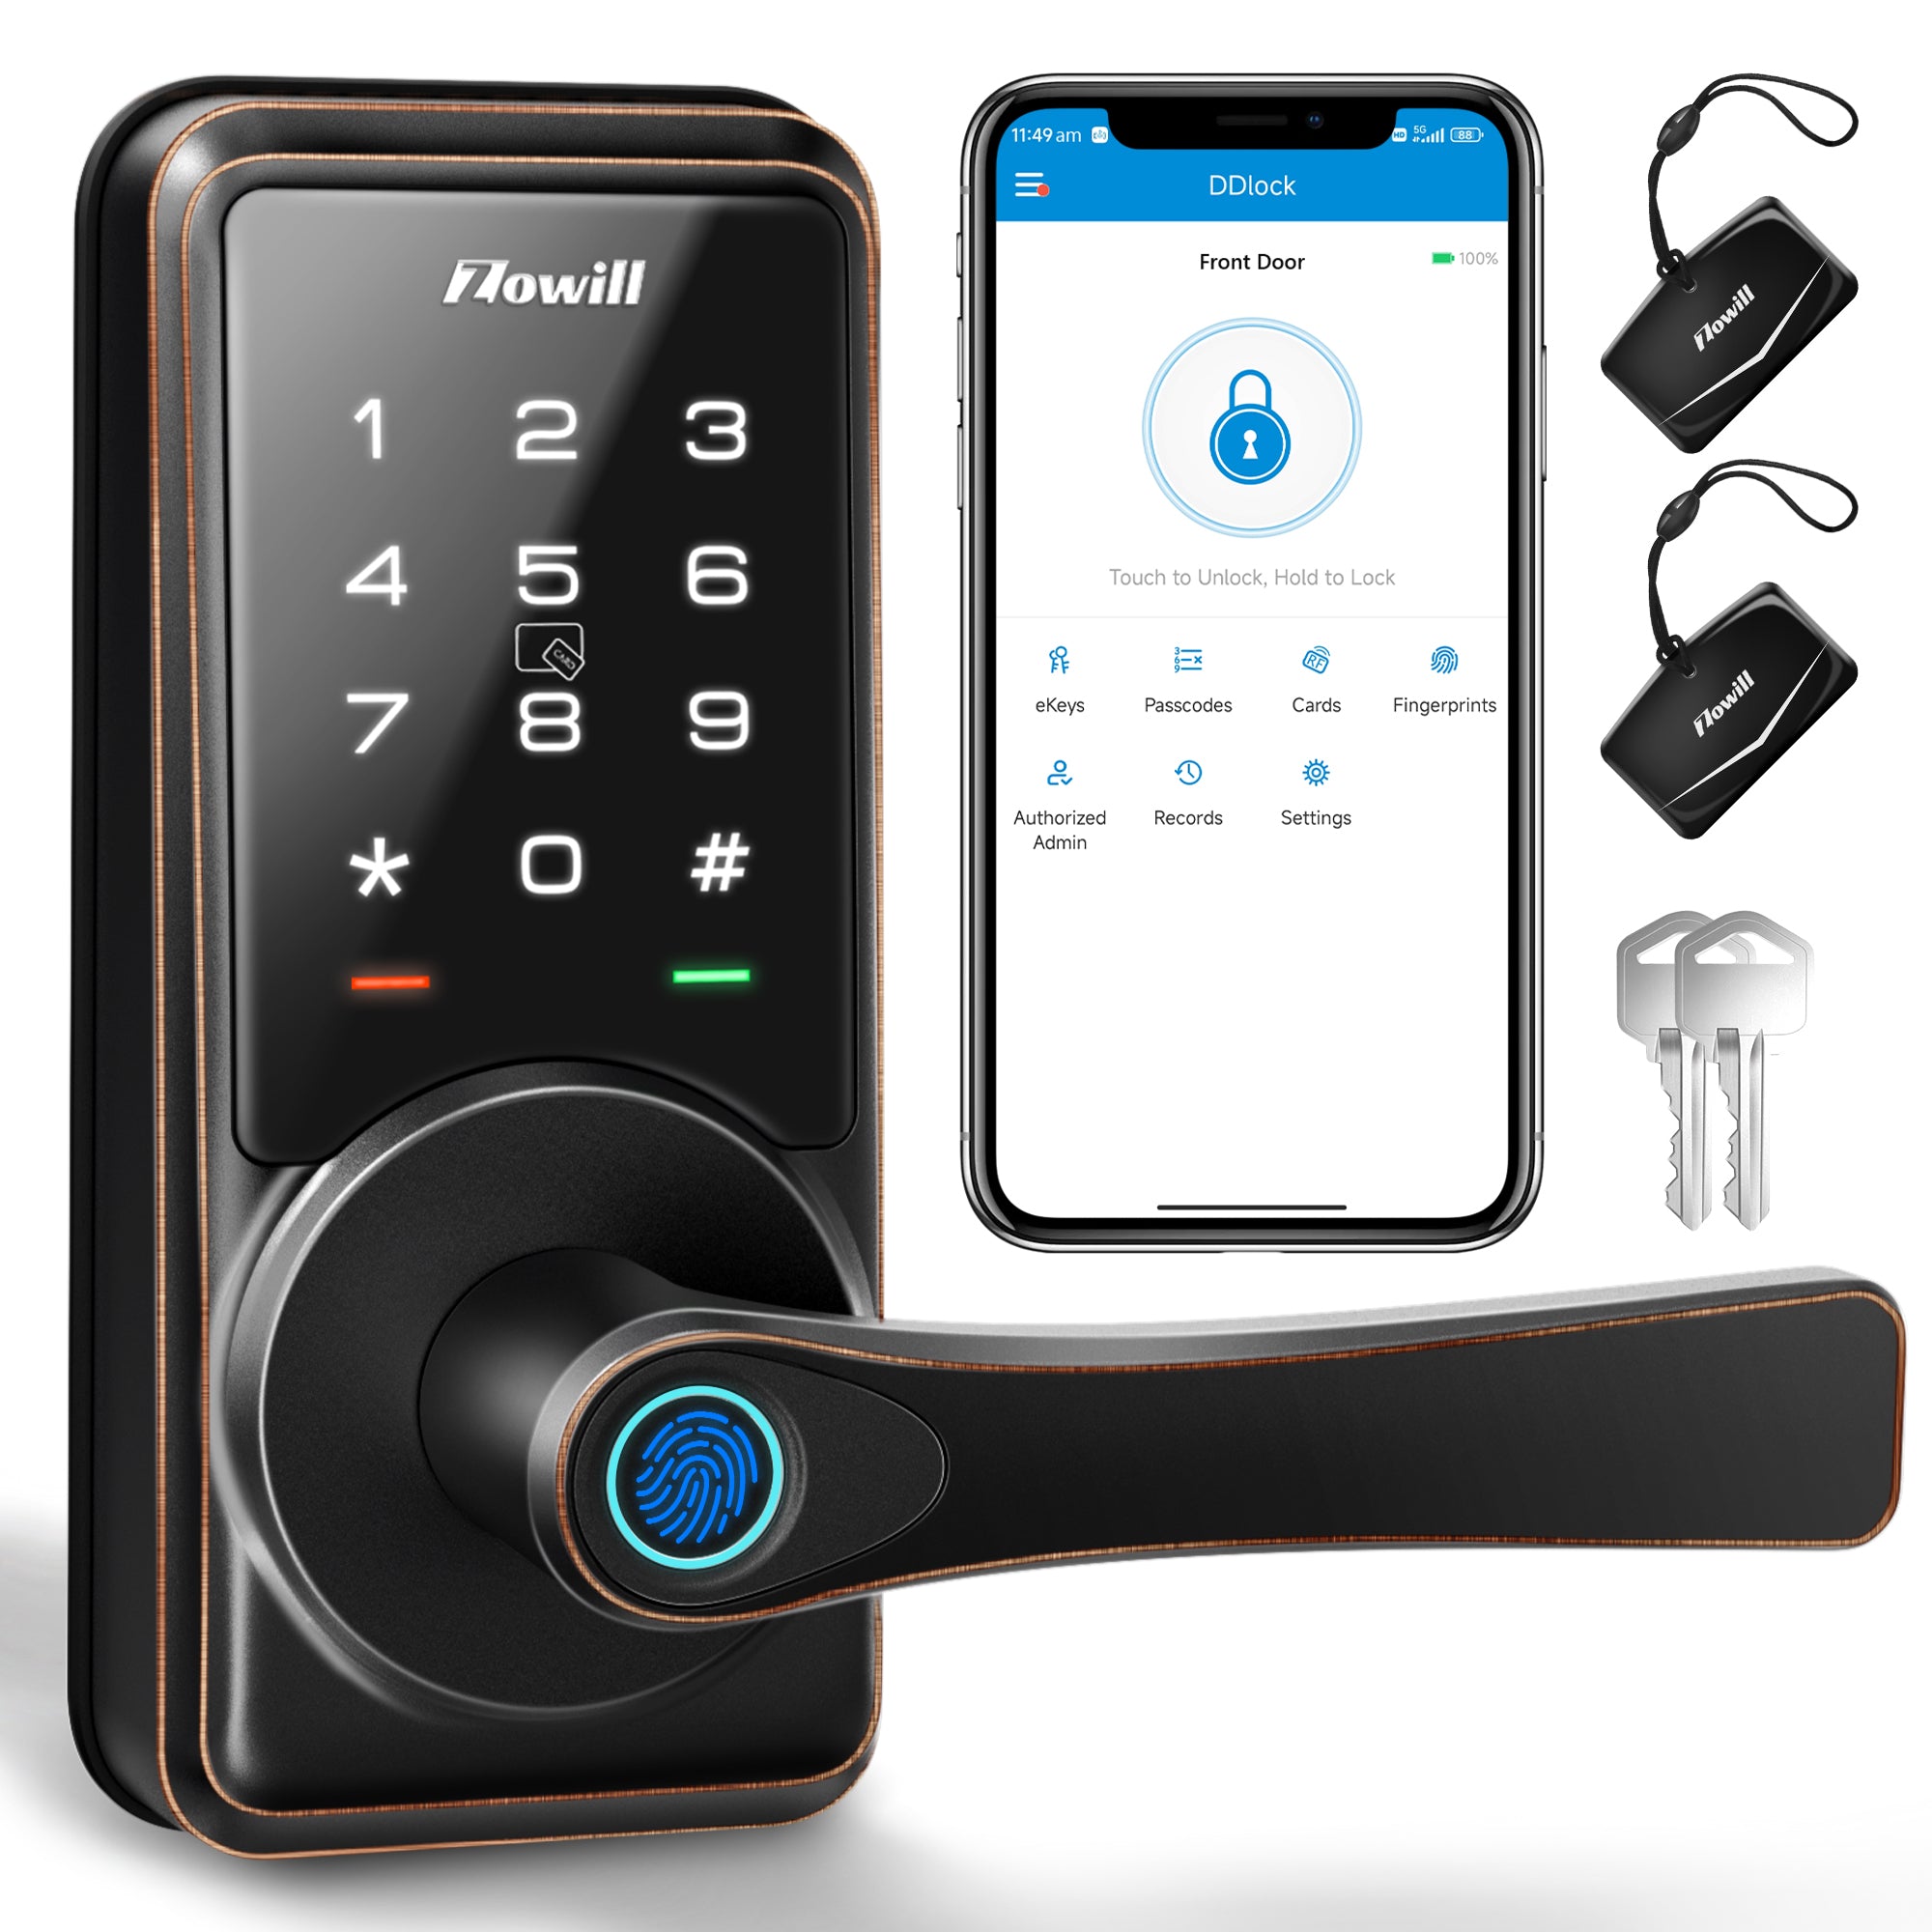 Smart Lock, Zowill 7-in-1 Fingerprint Door Lock, DK09